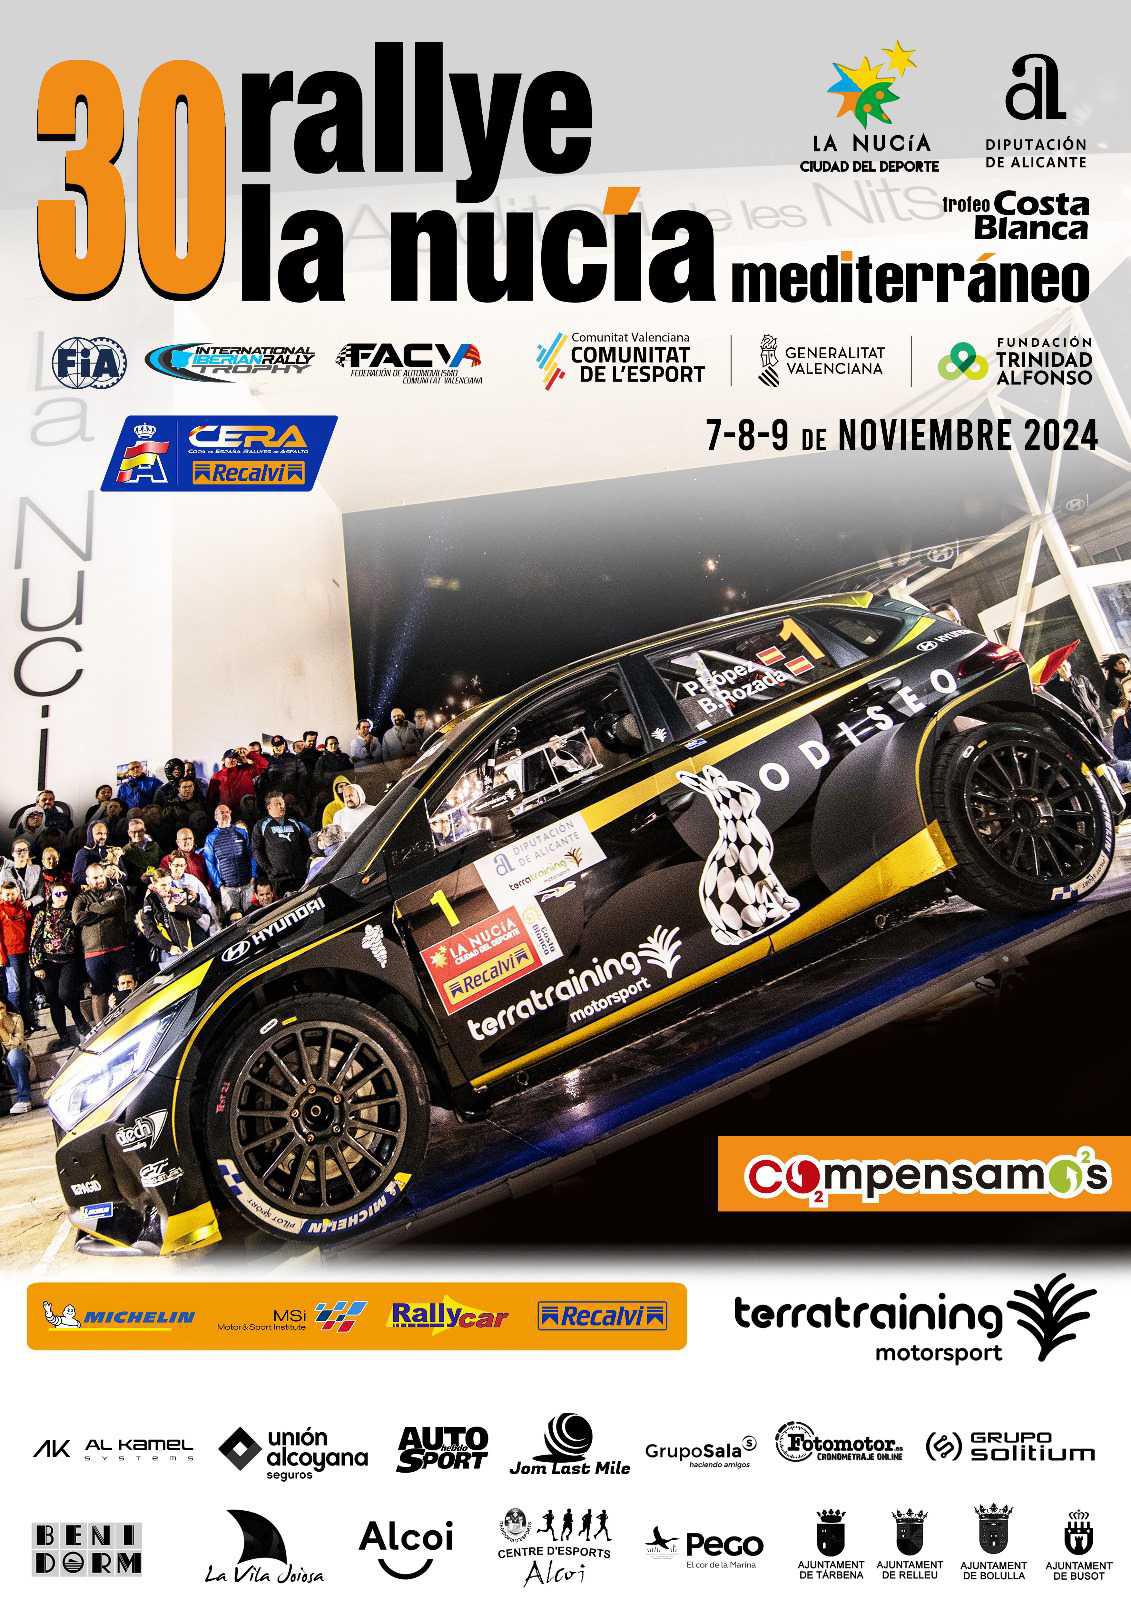 El 30 Rallye La Nucía Mediterráneo ‘Trofeo Costa Blanca’ arranca motores 